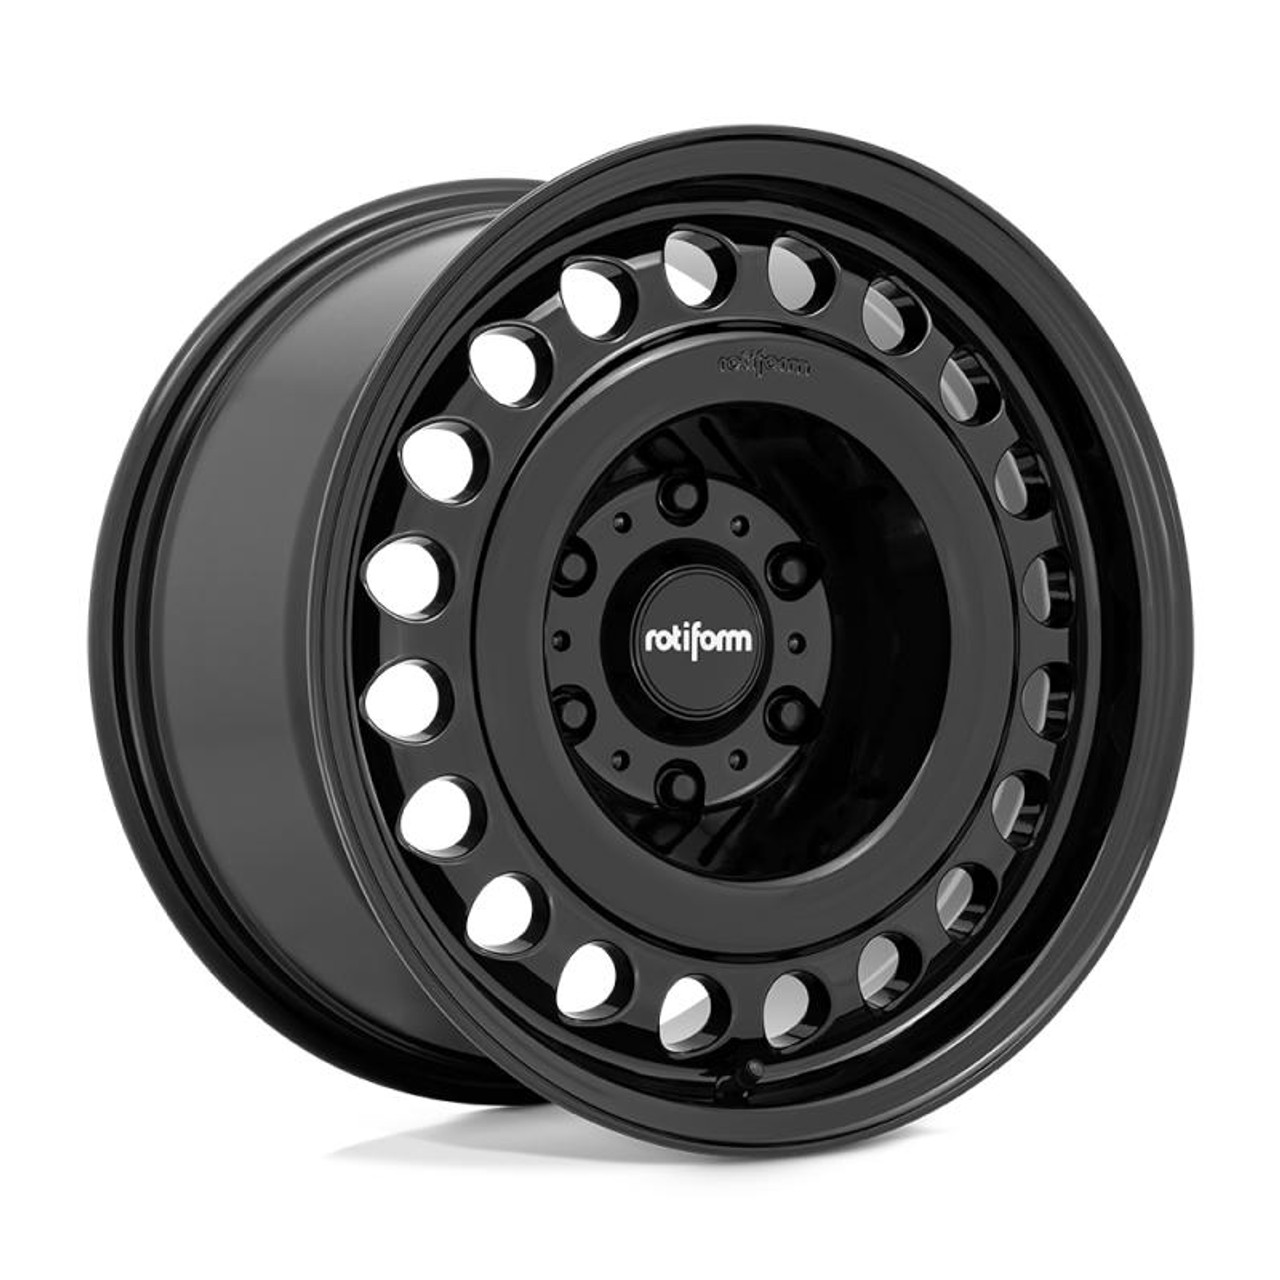  Rotiform R191 STL Wheel 20x9 5x130 25 Offset - Gloss Black - R19120904660 